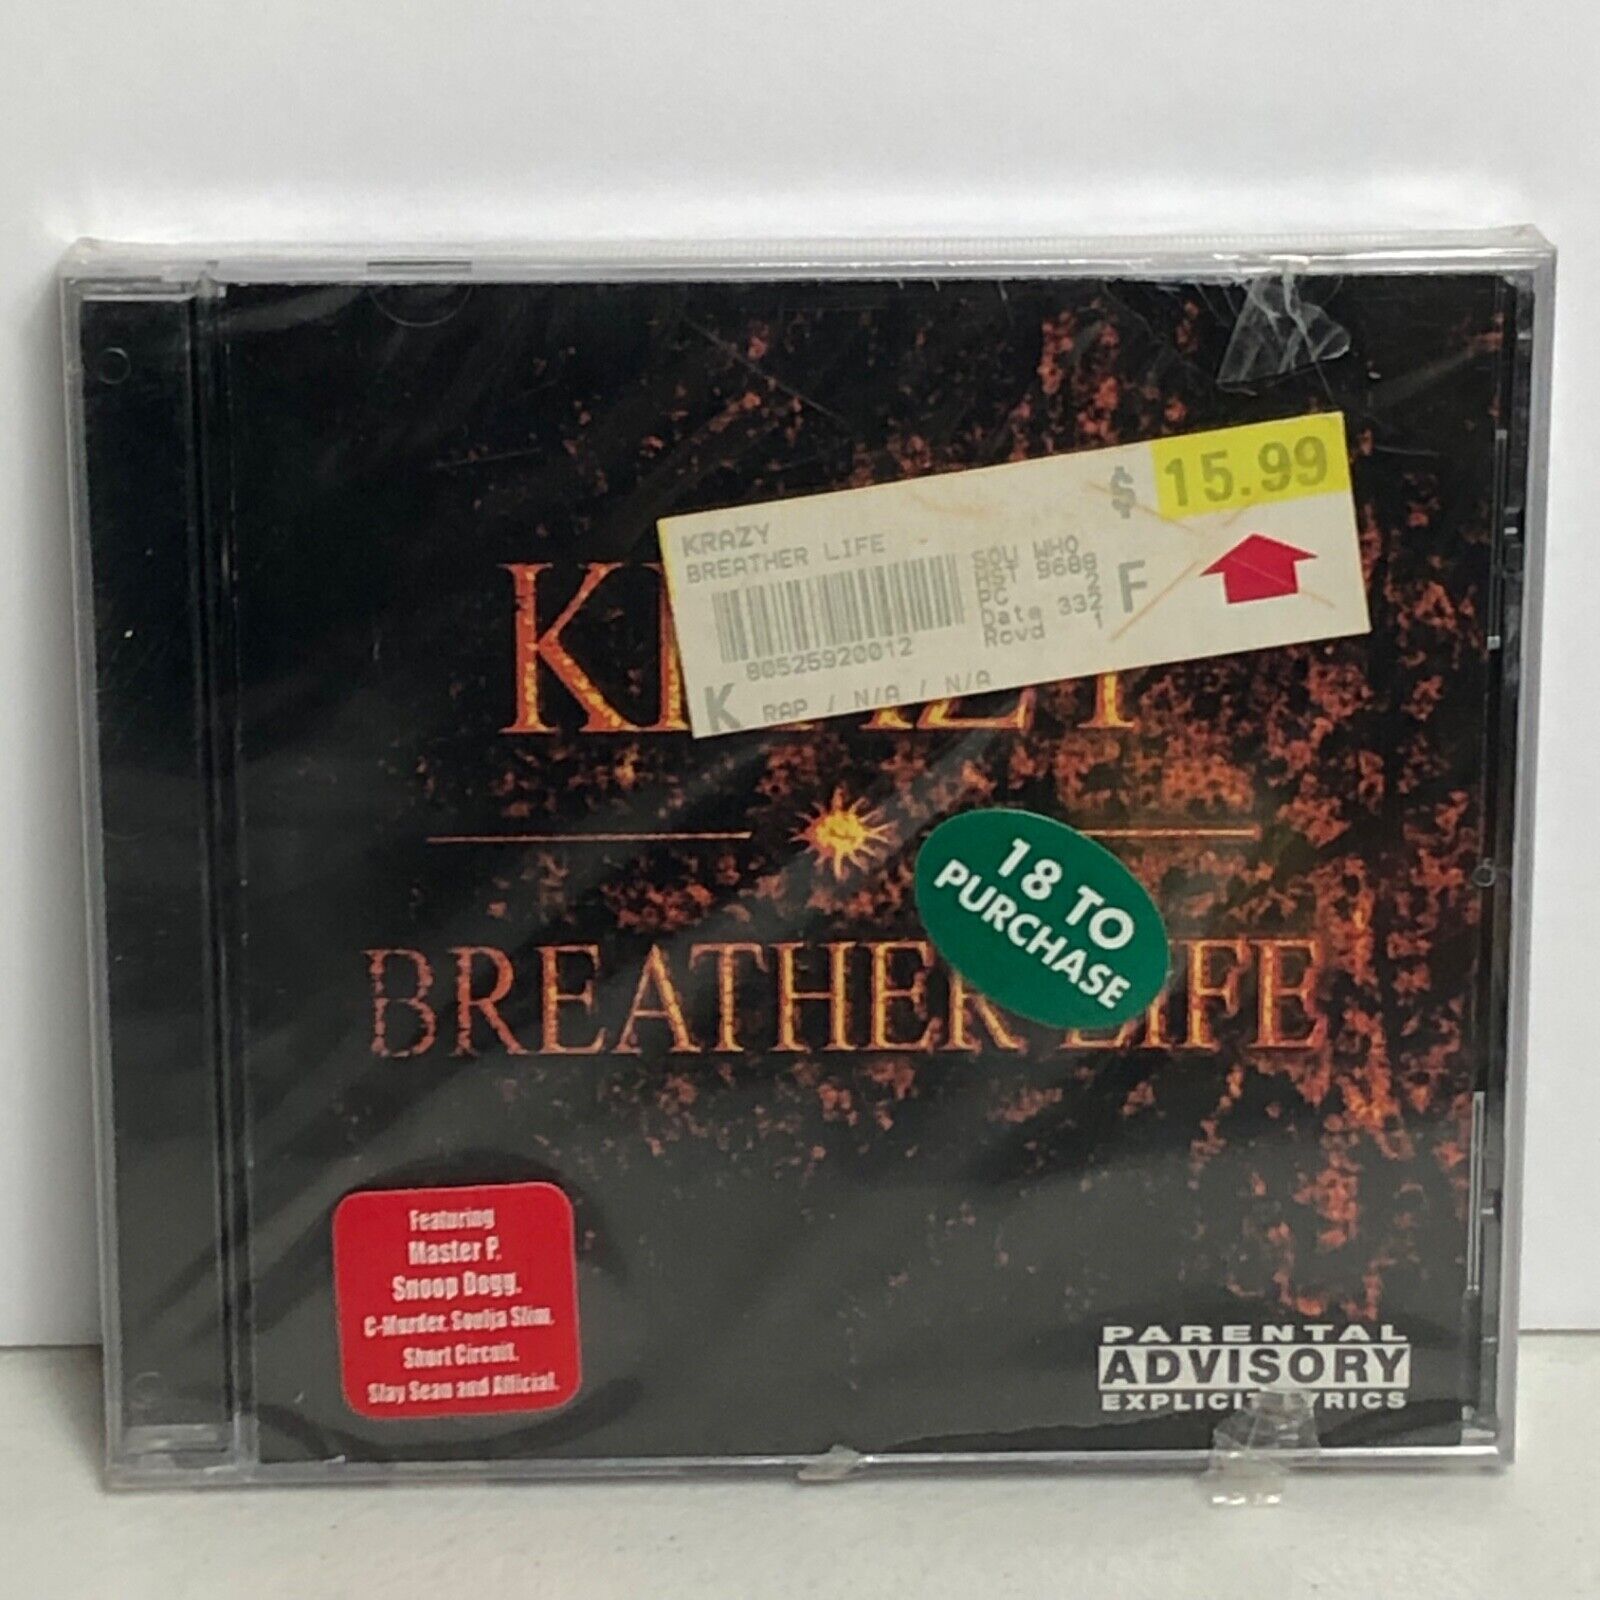 Vintage 2001 Krazy Breather Life CD New Sealed